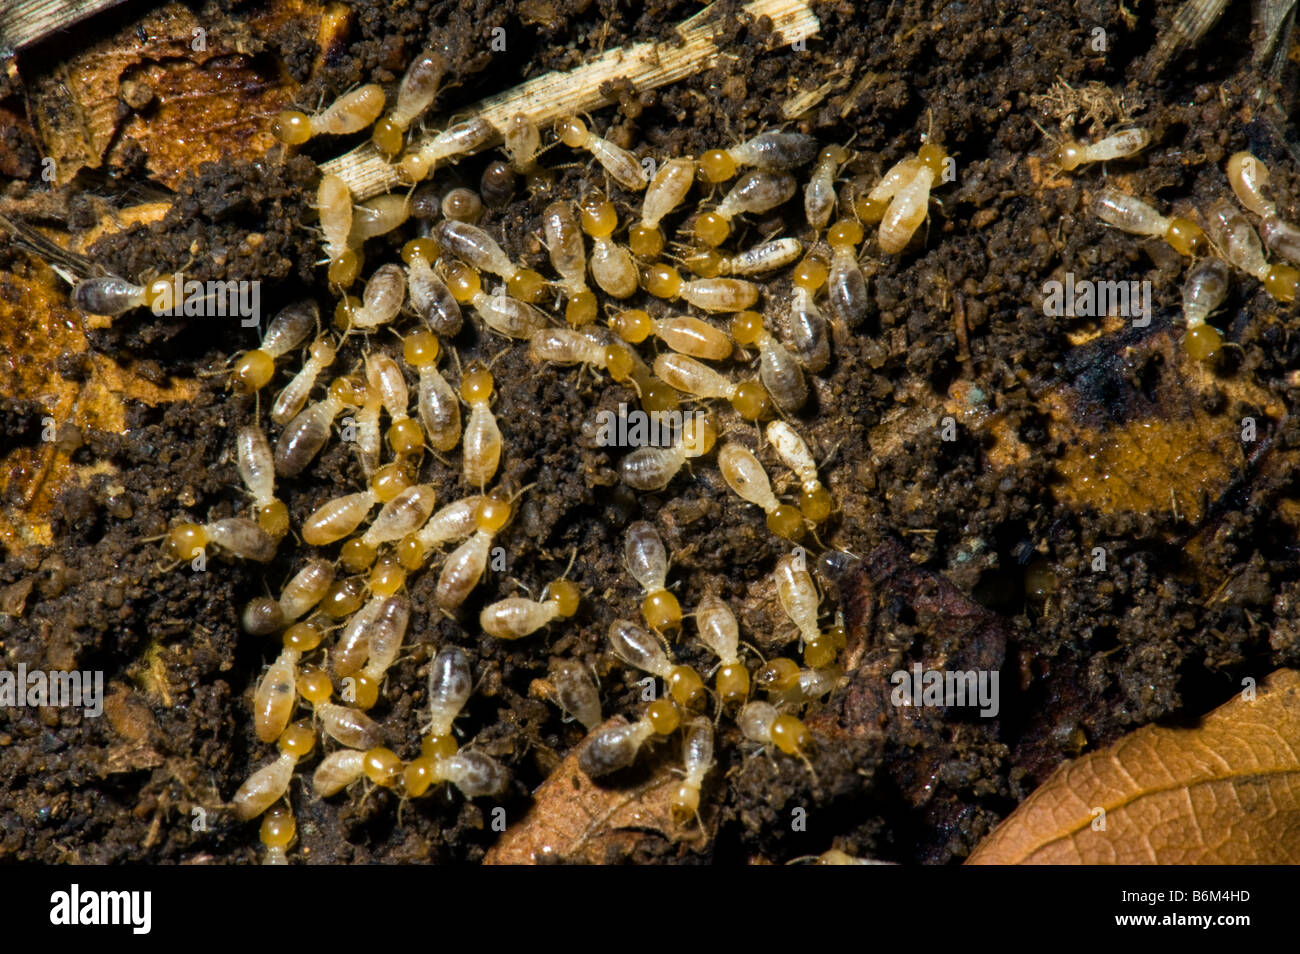 La faune sauvage les termites fourmis blanches makro travailleurs sud-afrique macro jaune blanc la faune sauvage du Limpopo, Afrique du Sud Afrique sout Banque D'Images